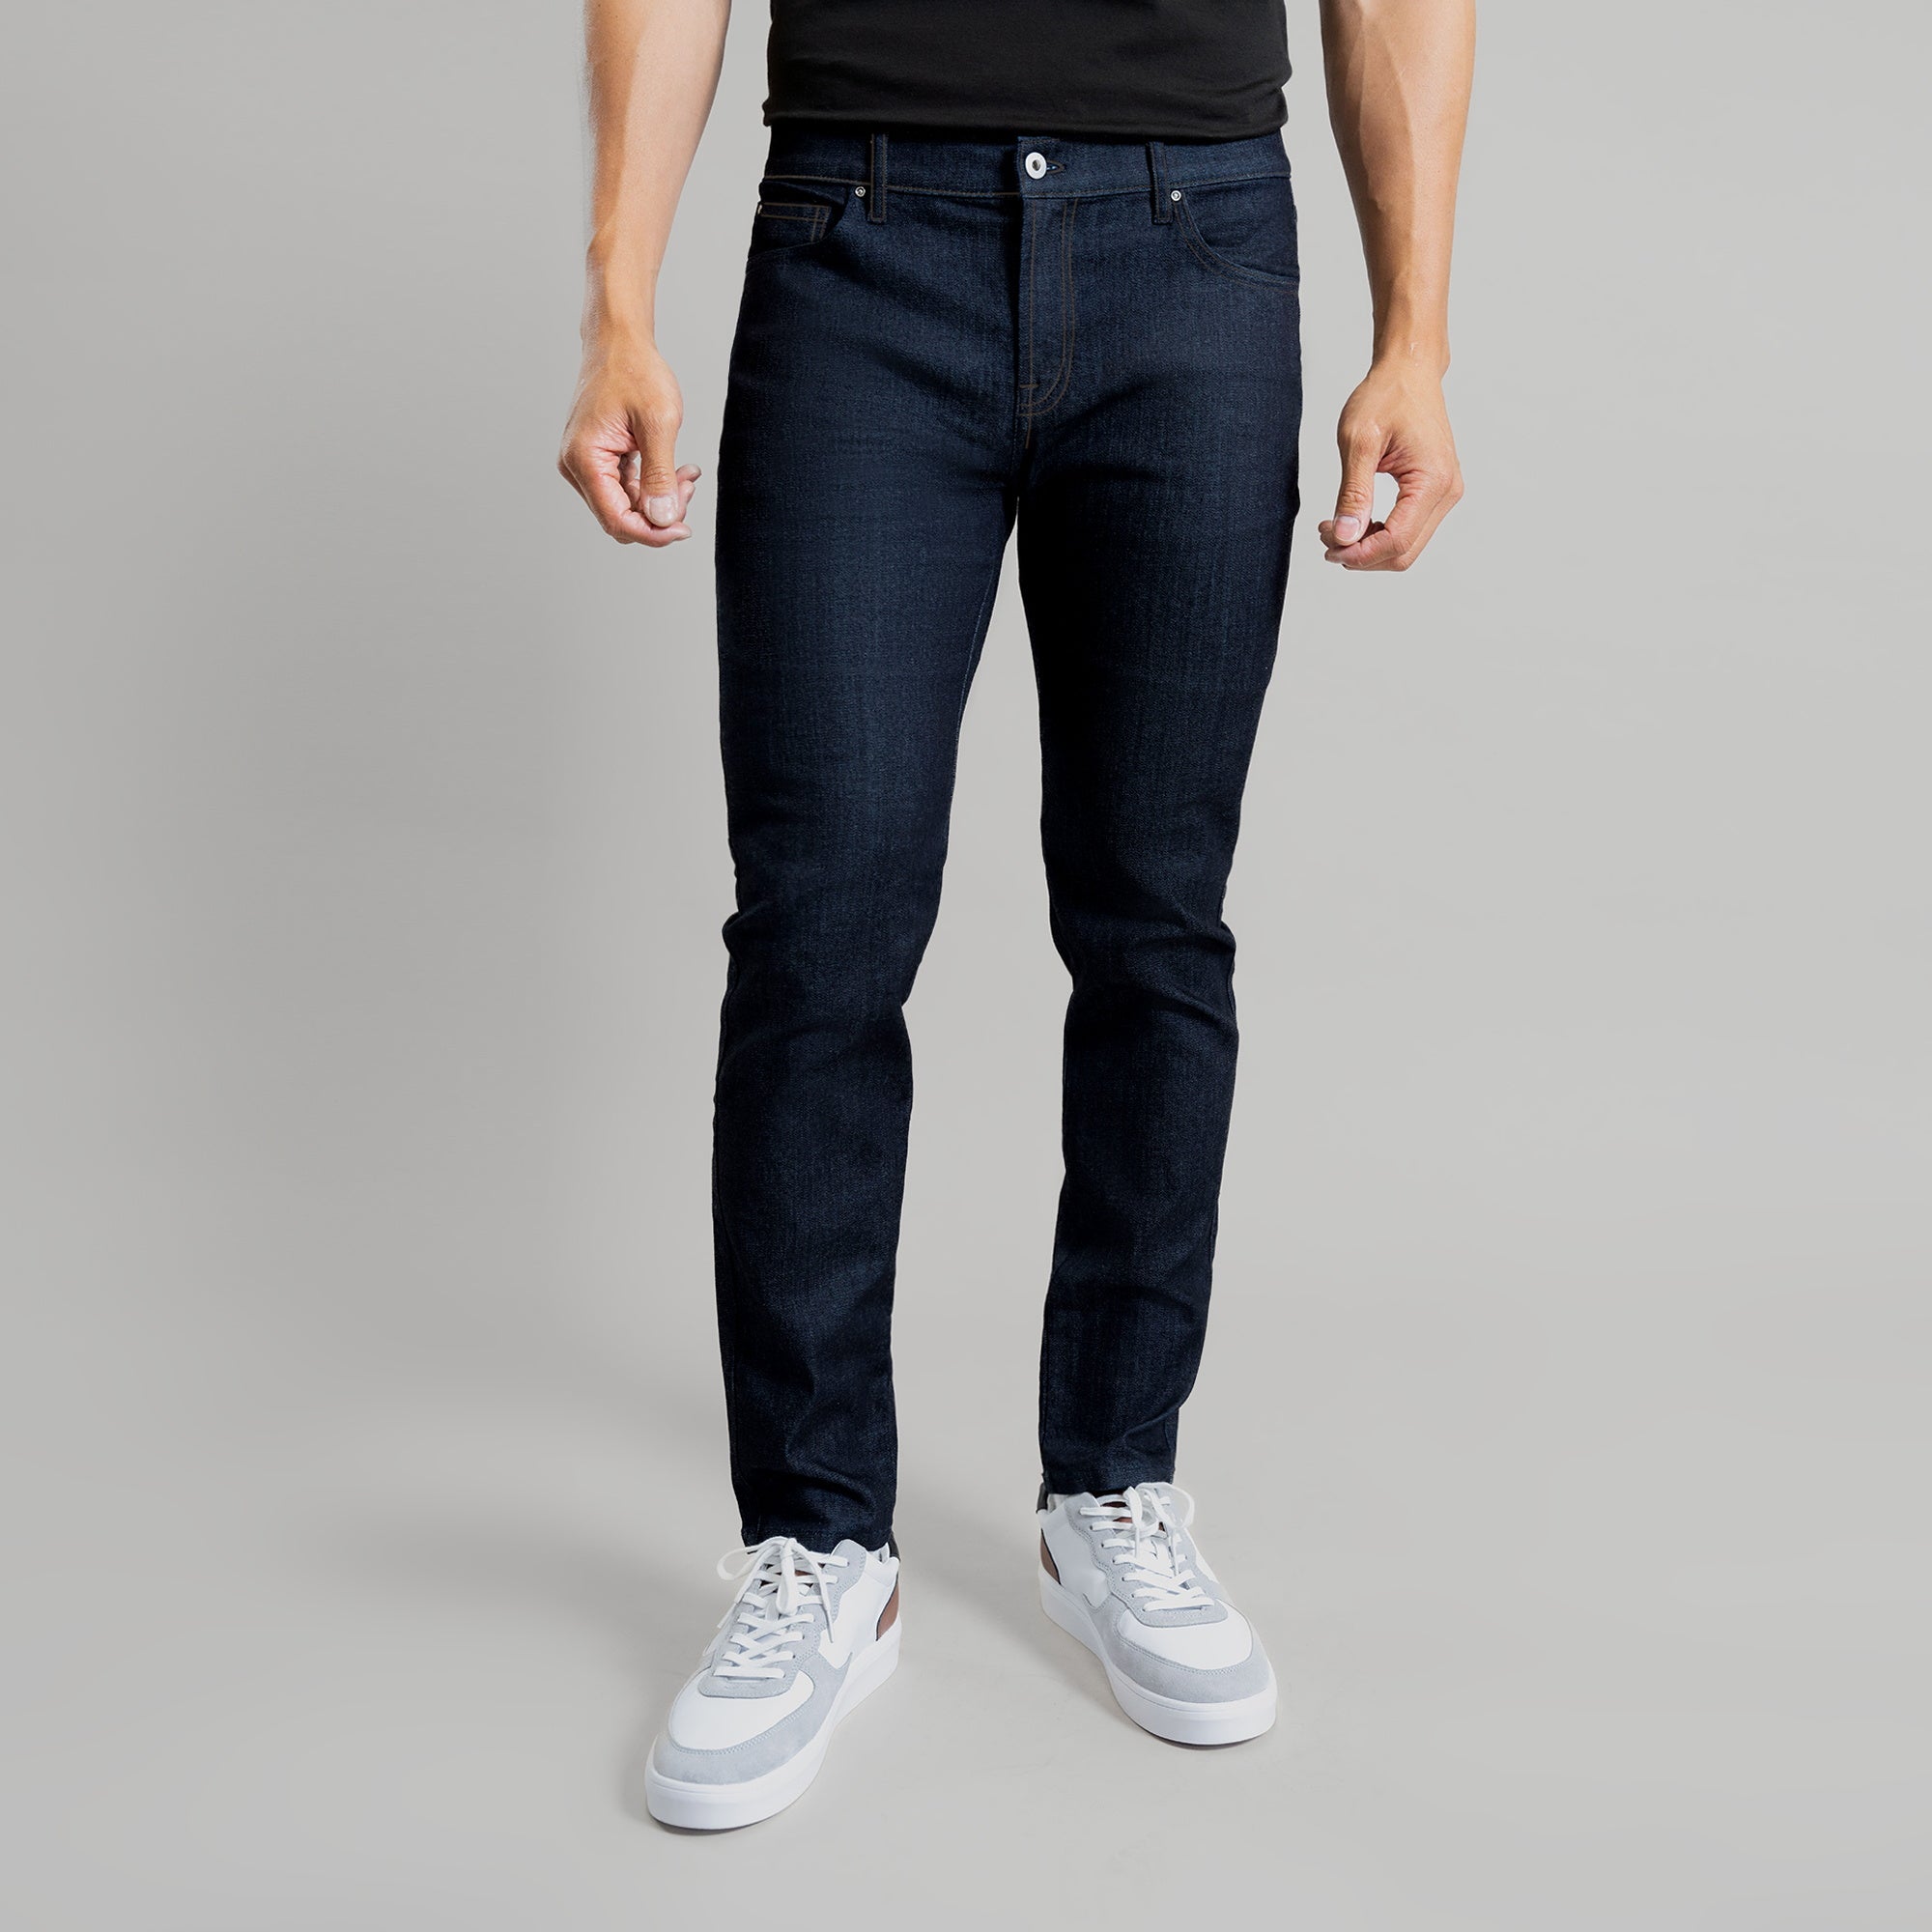 Custom Jeans For Men, Air Jeans